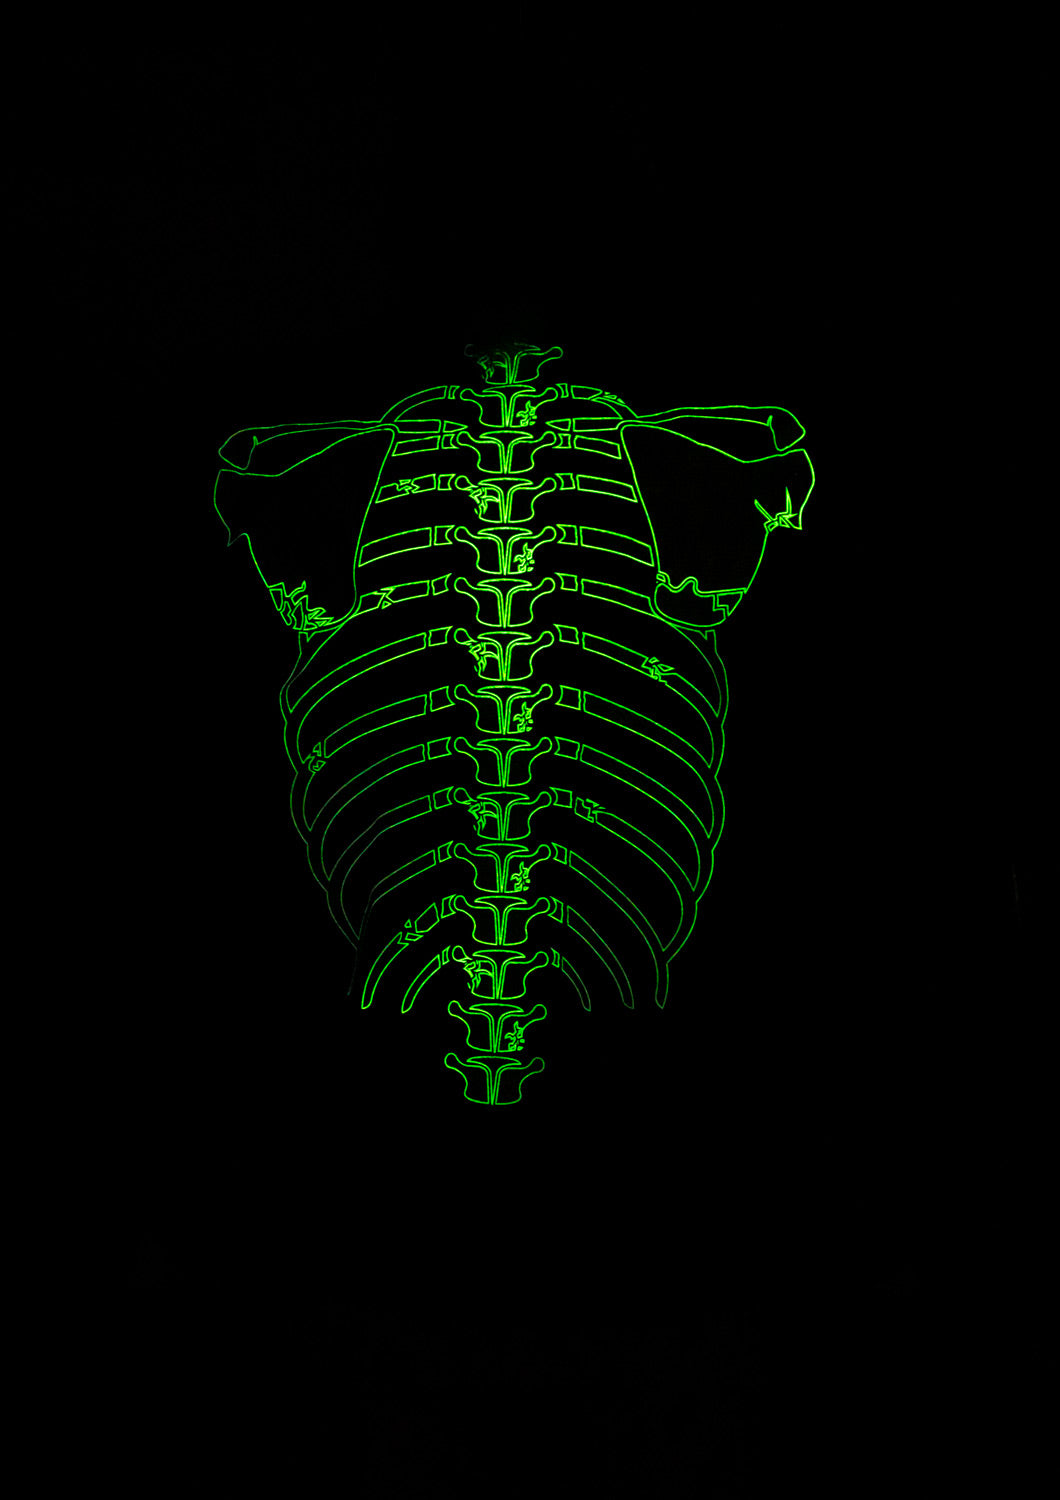 Glow in the Dark Mohawk Skeleton Hoodie - Full Zip Hooded Costume